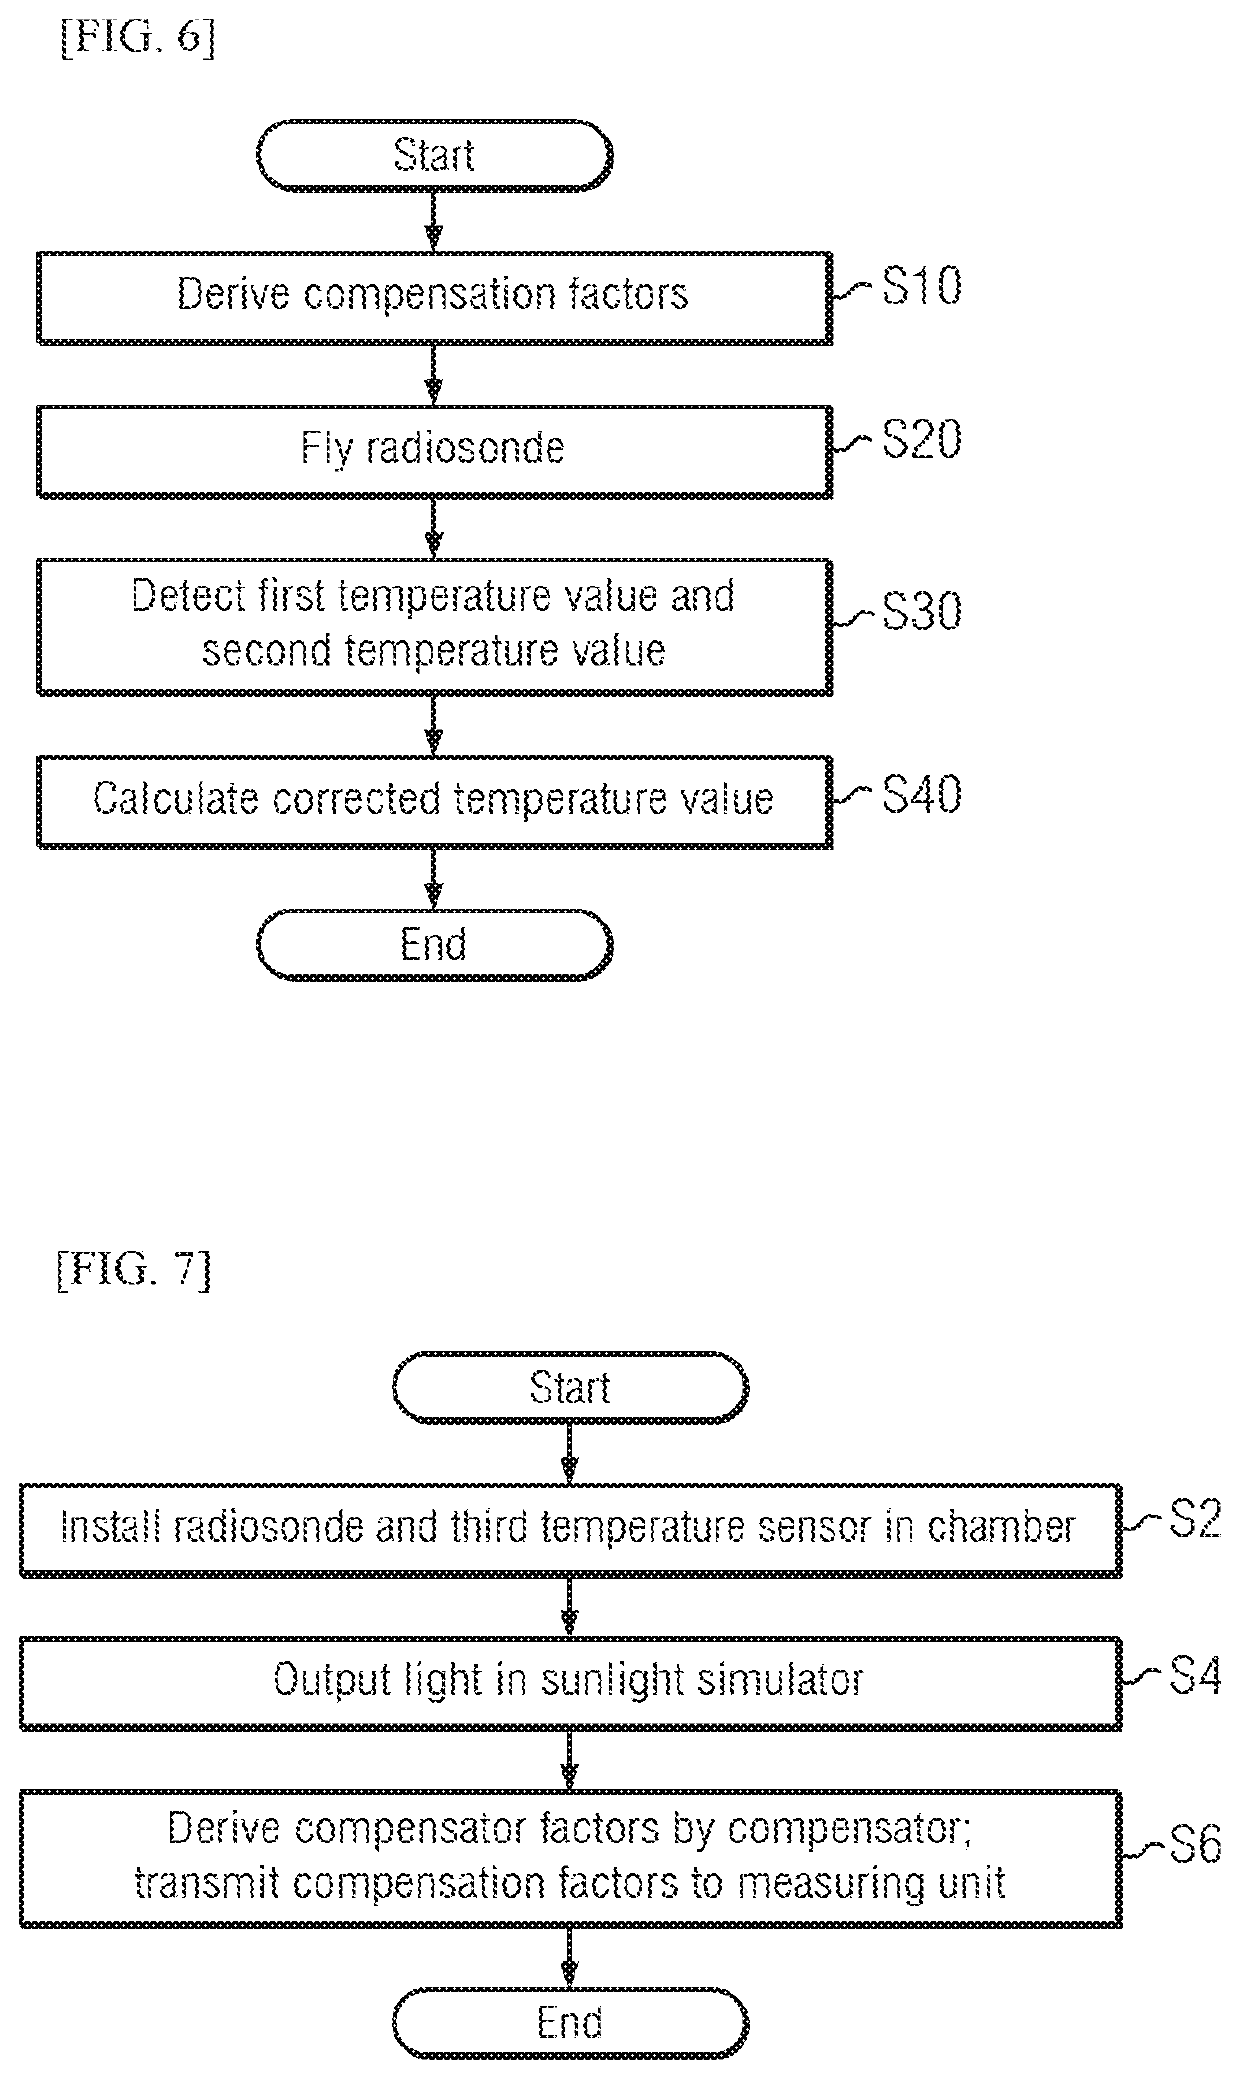 Radiosonde air temperature measurement correction system and method